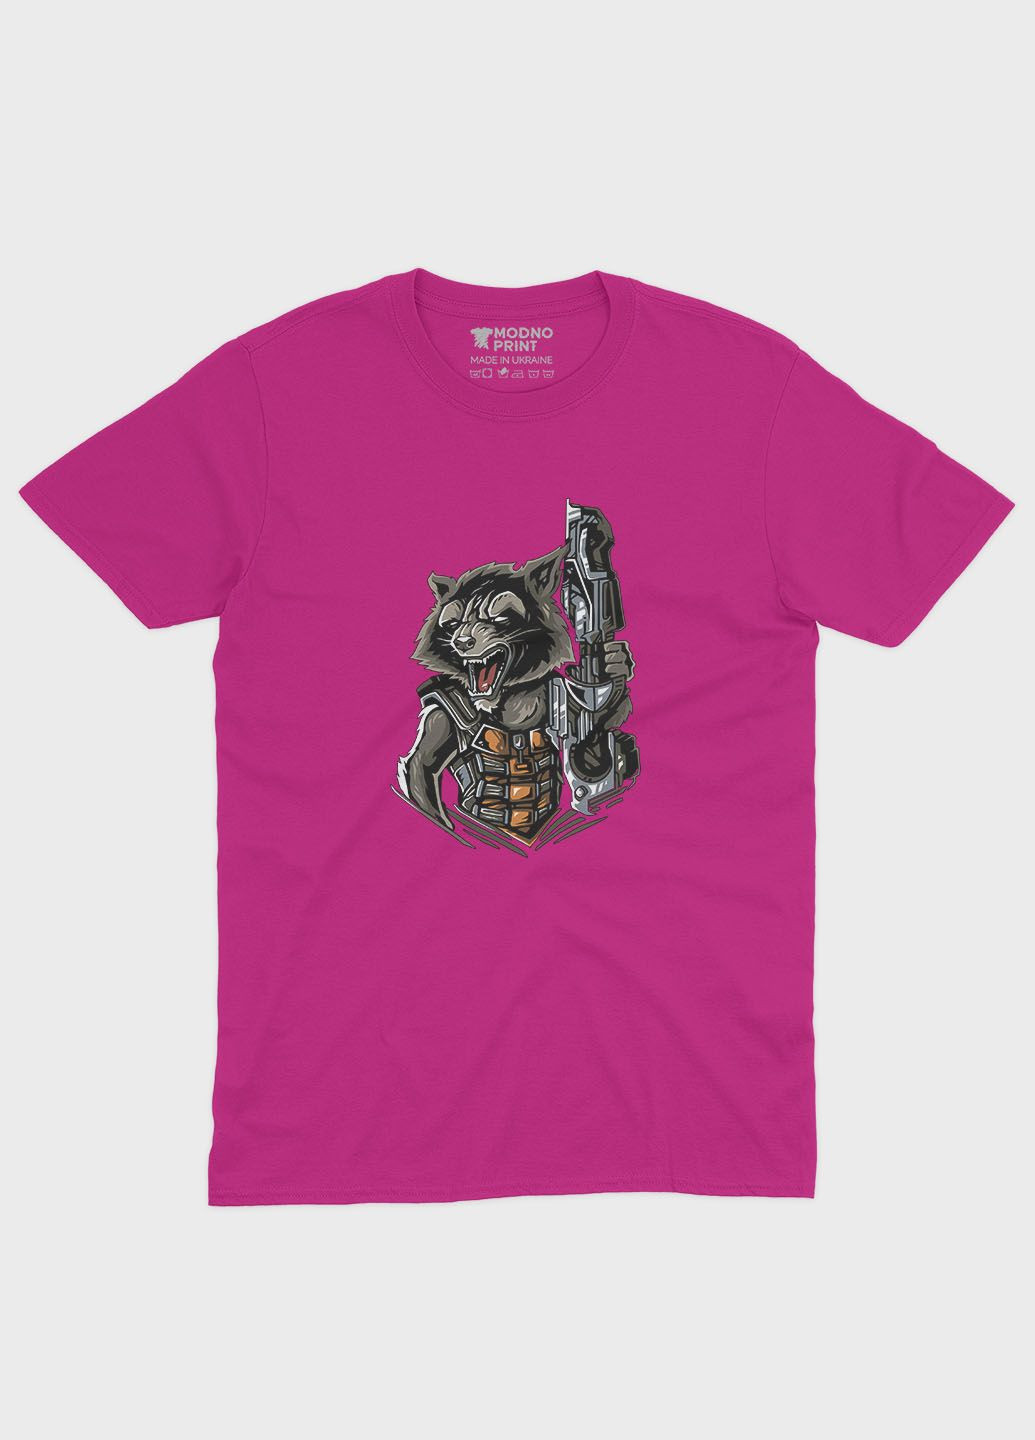 Рожева демісезонна футболка для дівчинки з принтом супергероїв - вартові галактики (ts001-1-fuxj-006-017-015-g) Modno